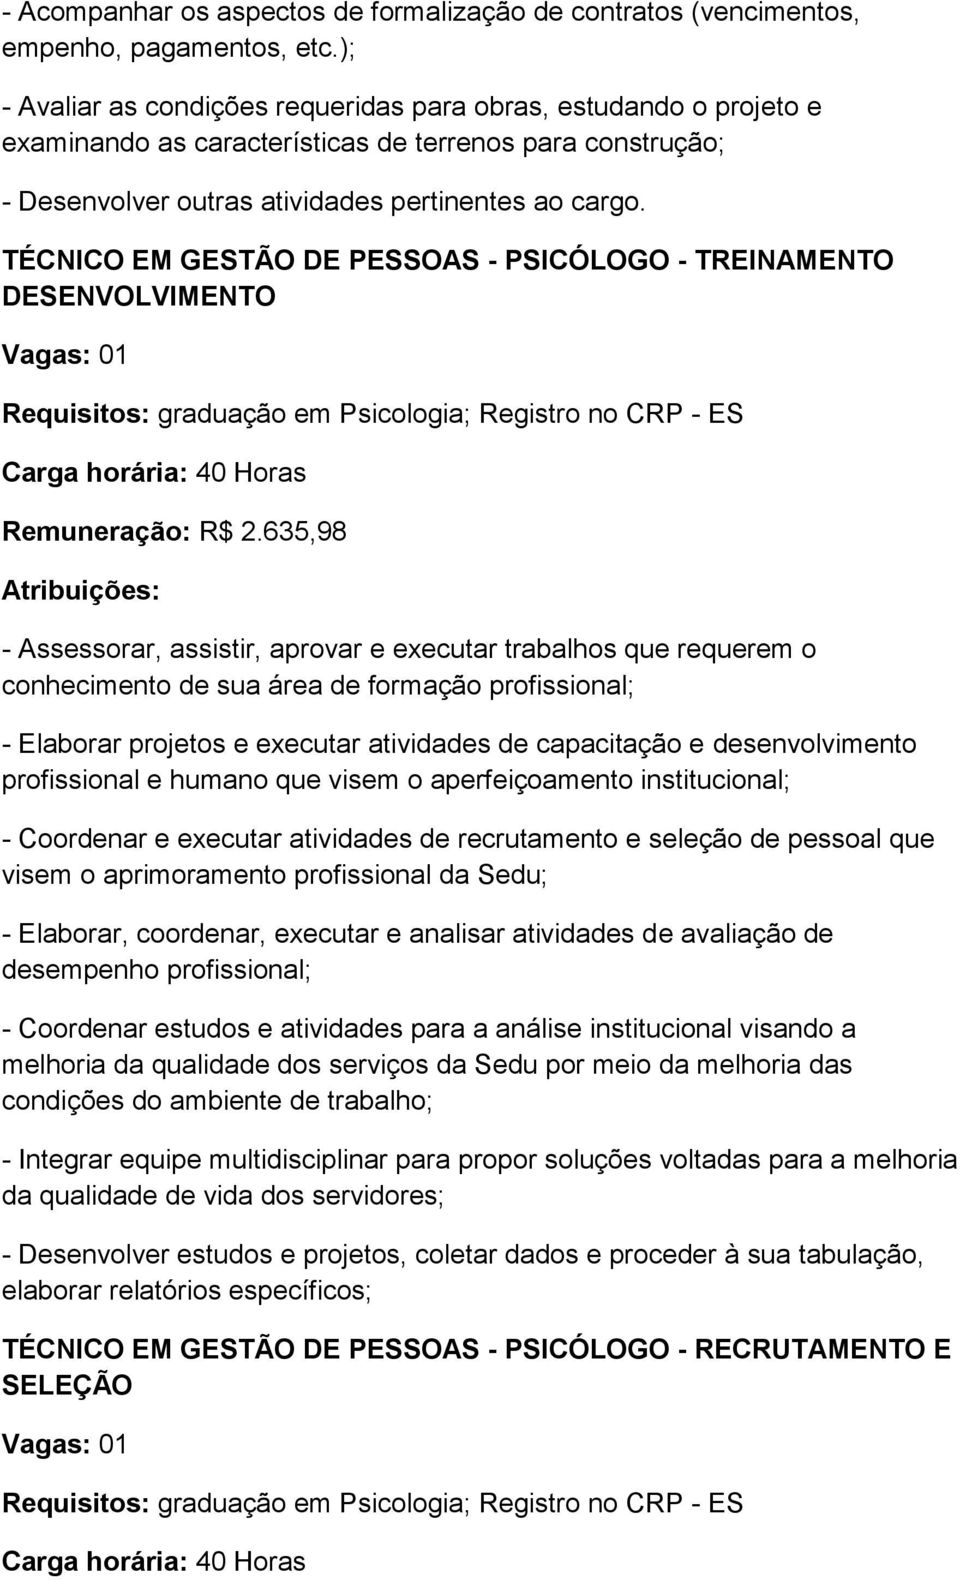 DESENVOLVIMENTO Requisitos: graduação em Psicologia; Registro no CRP - ES Remuneração: R$ 2.